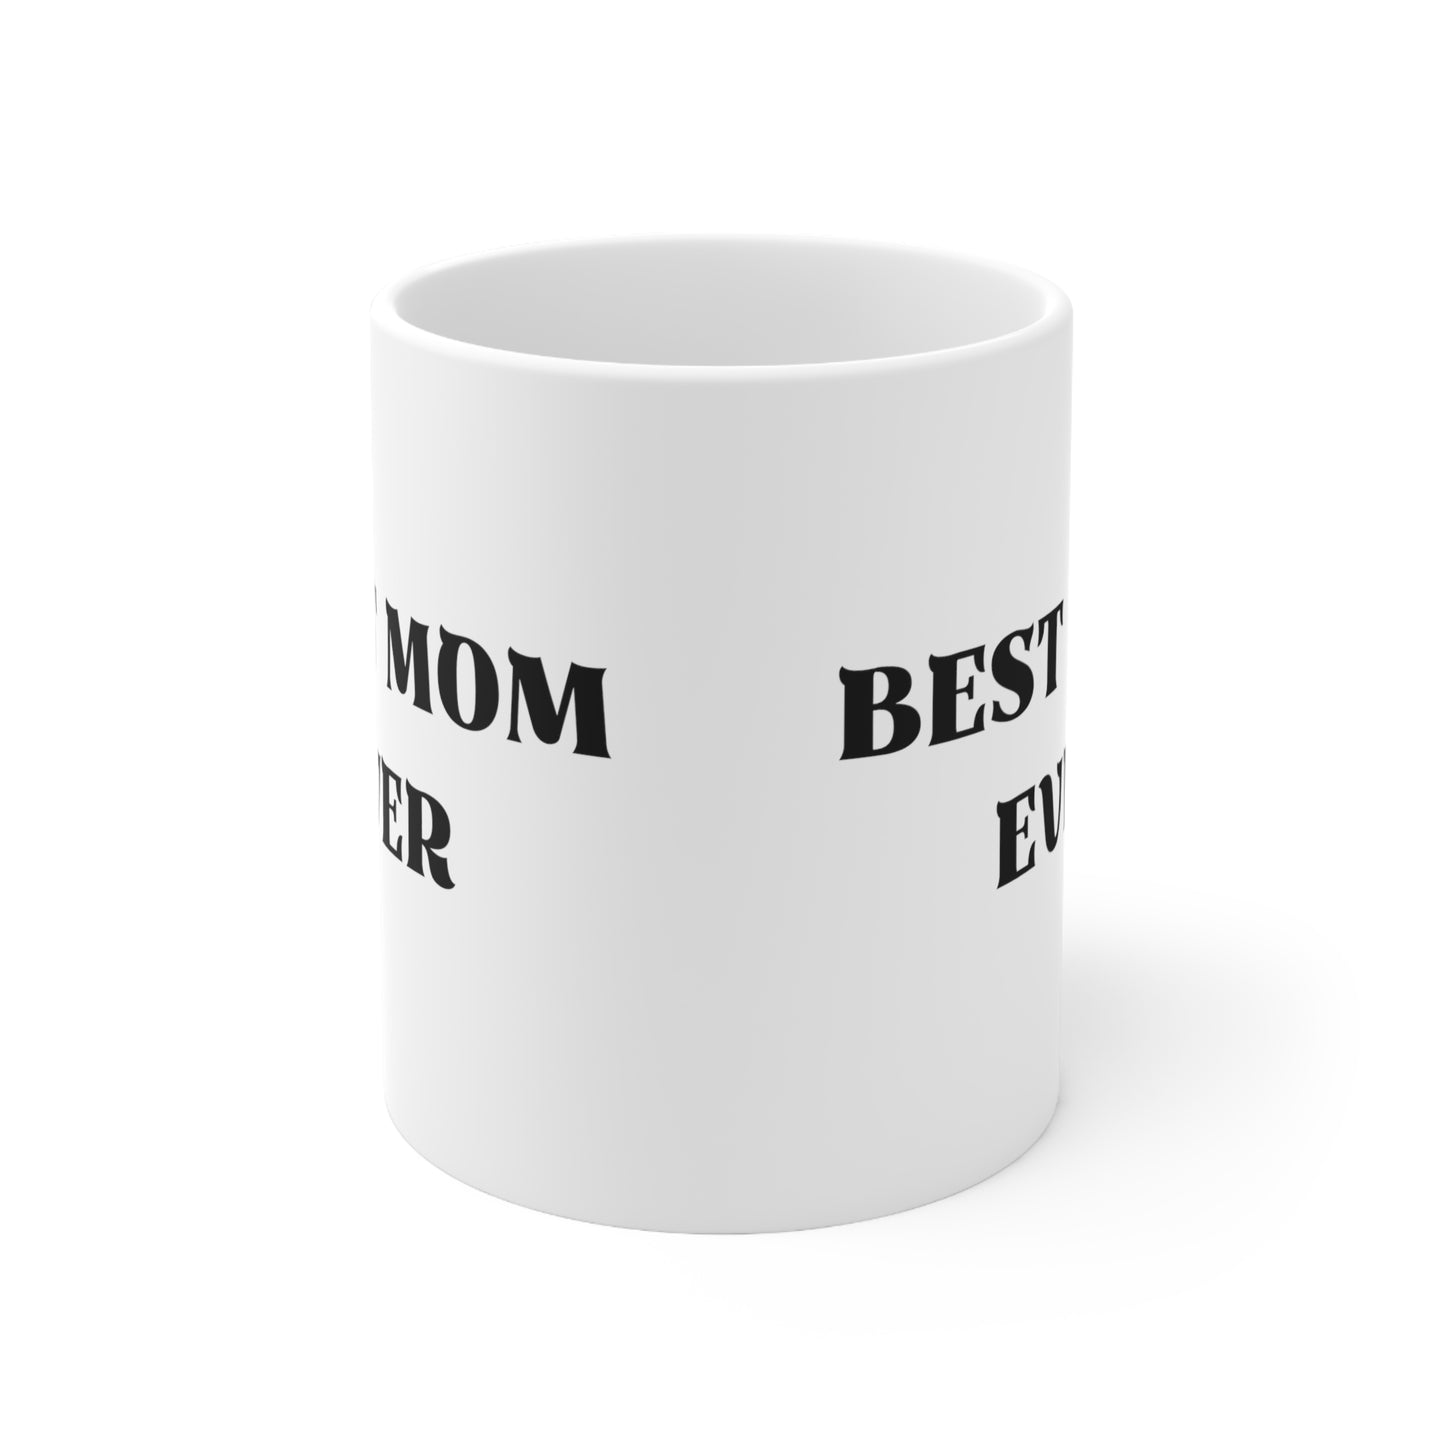 Best Mom Ever, Birthday Ceramic Mug 11oz, White